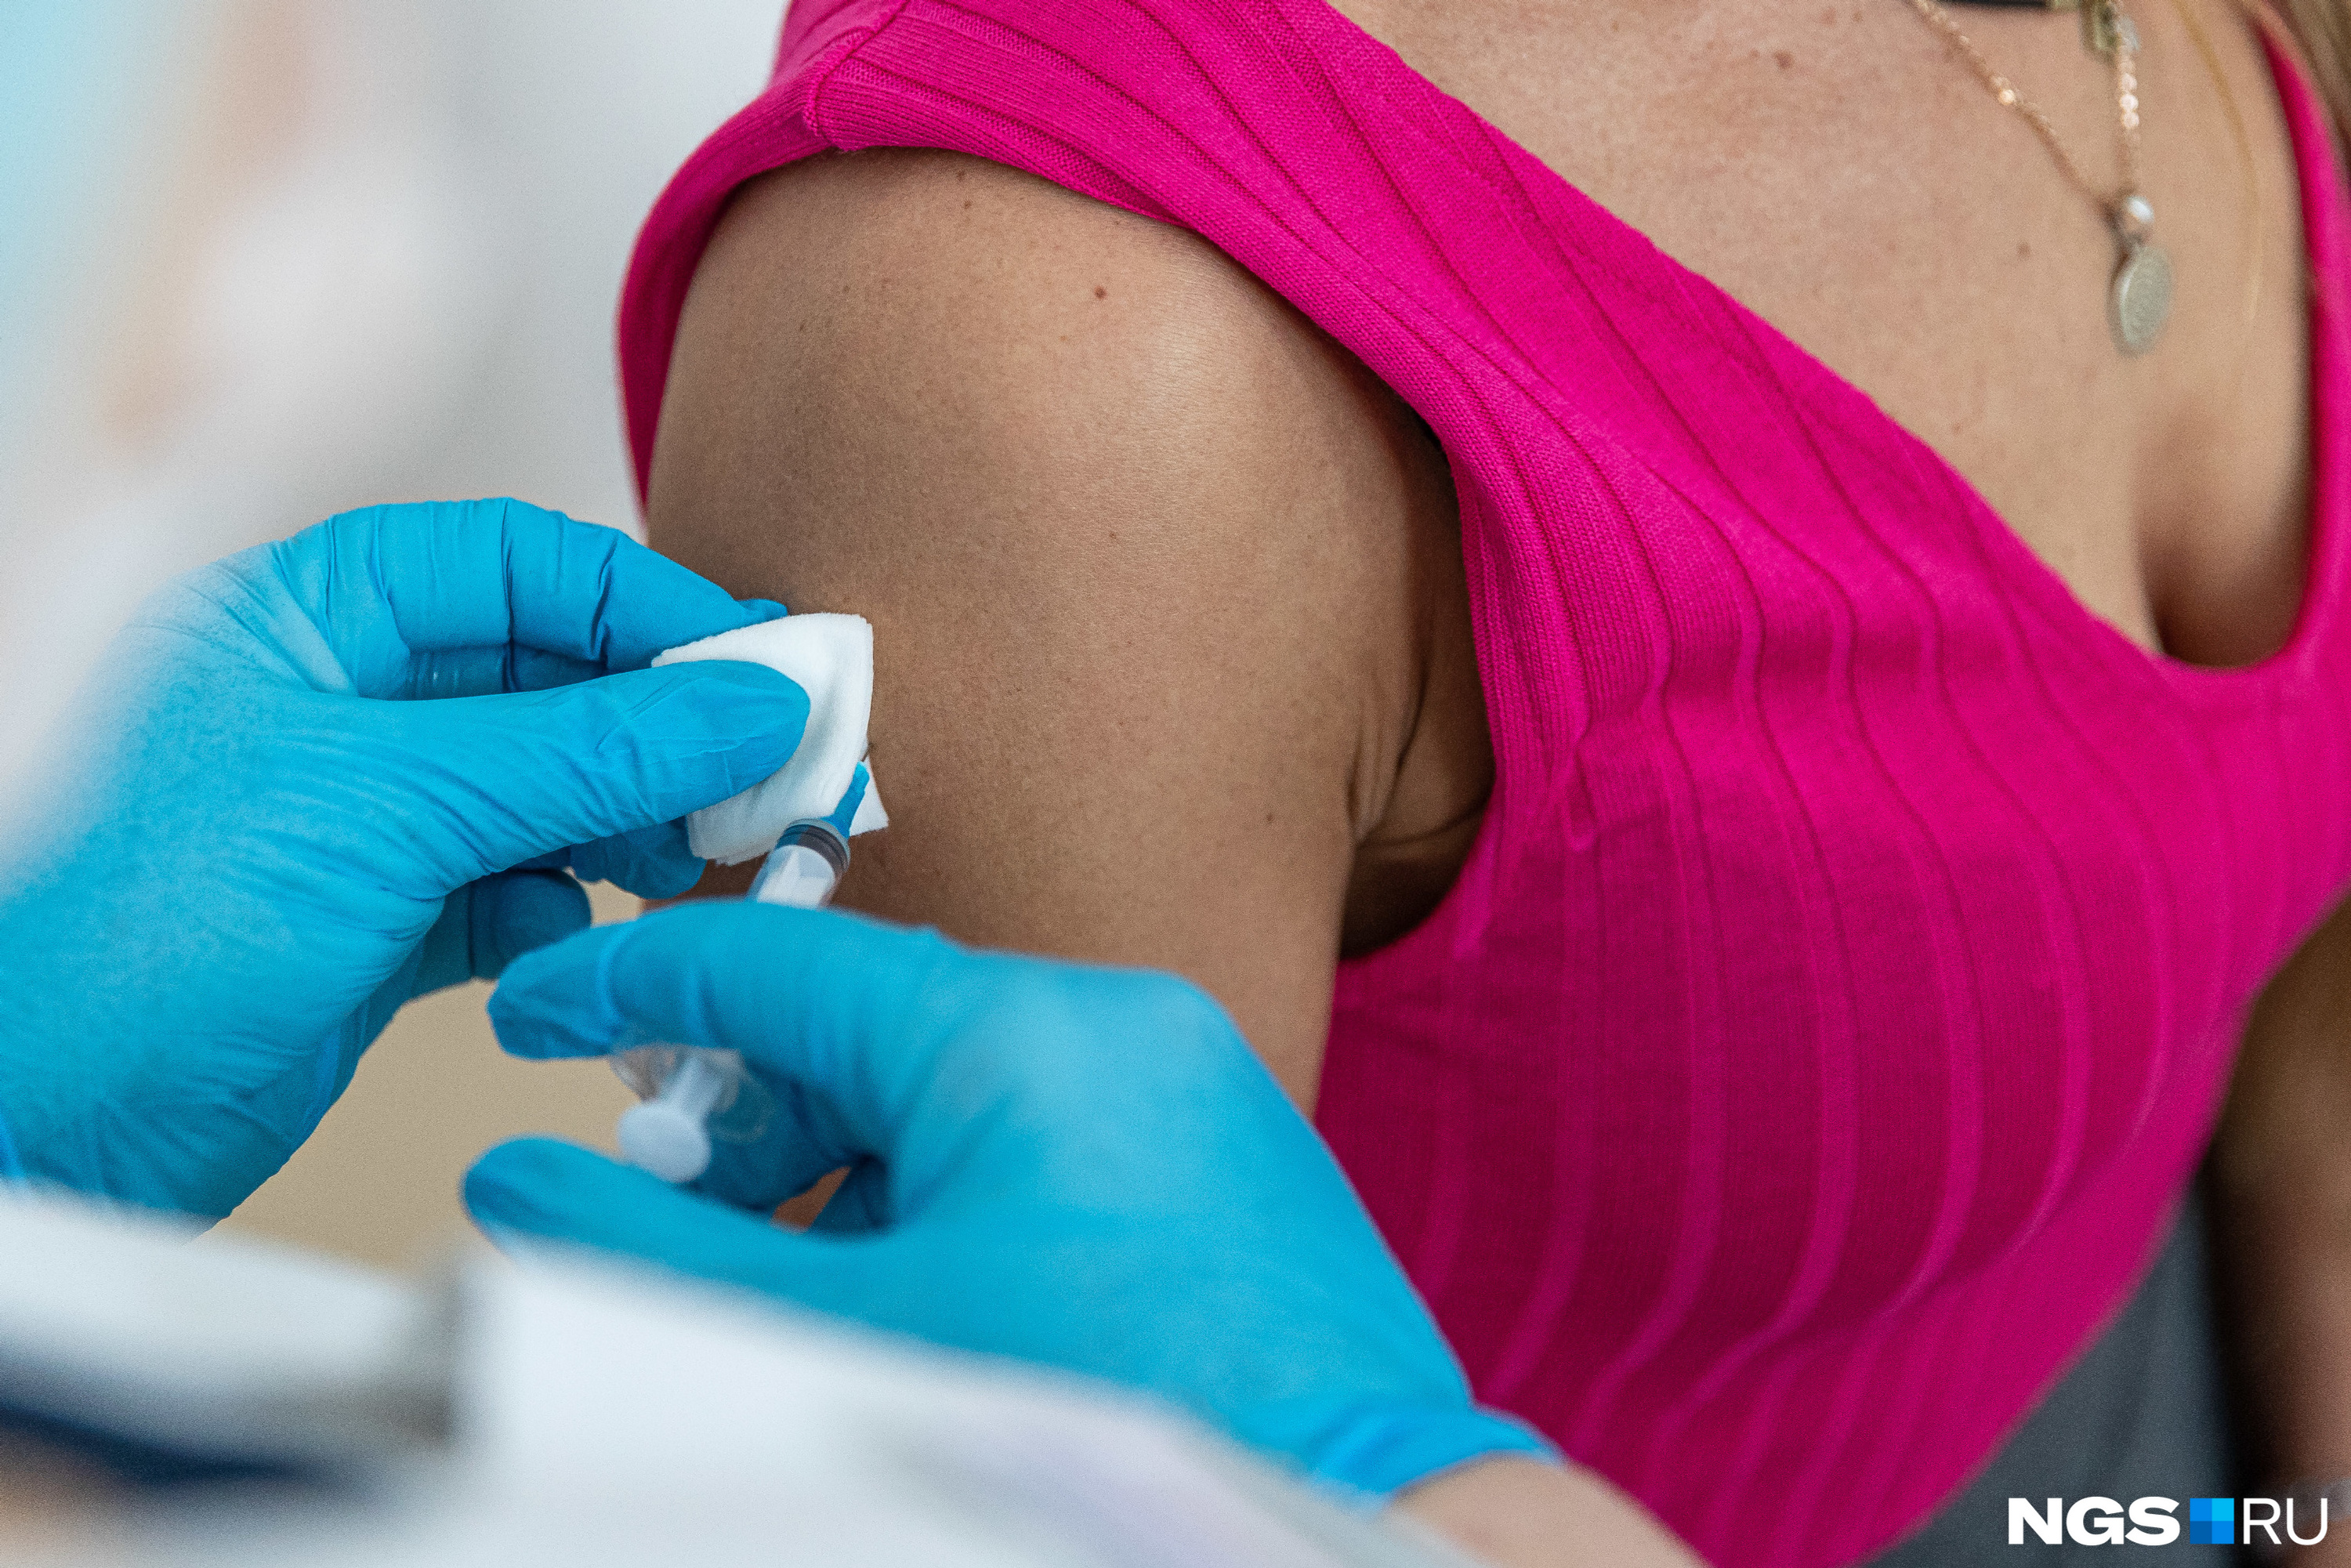 Многие новосибирцы теперь переживают о том, какую именно вакцину им ввели и всё ли с ней в порядке